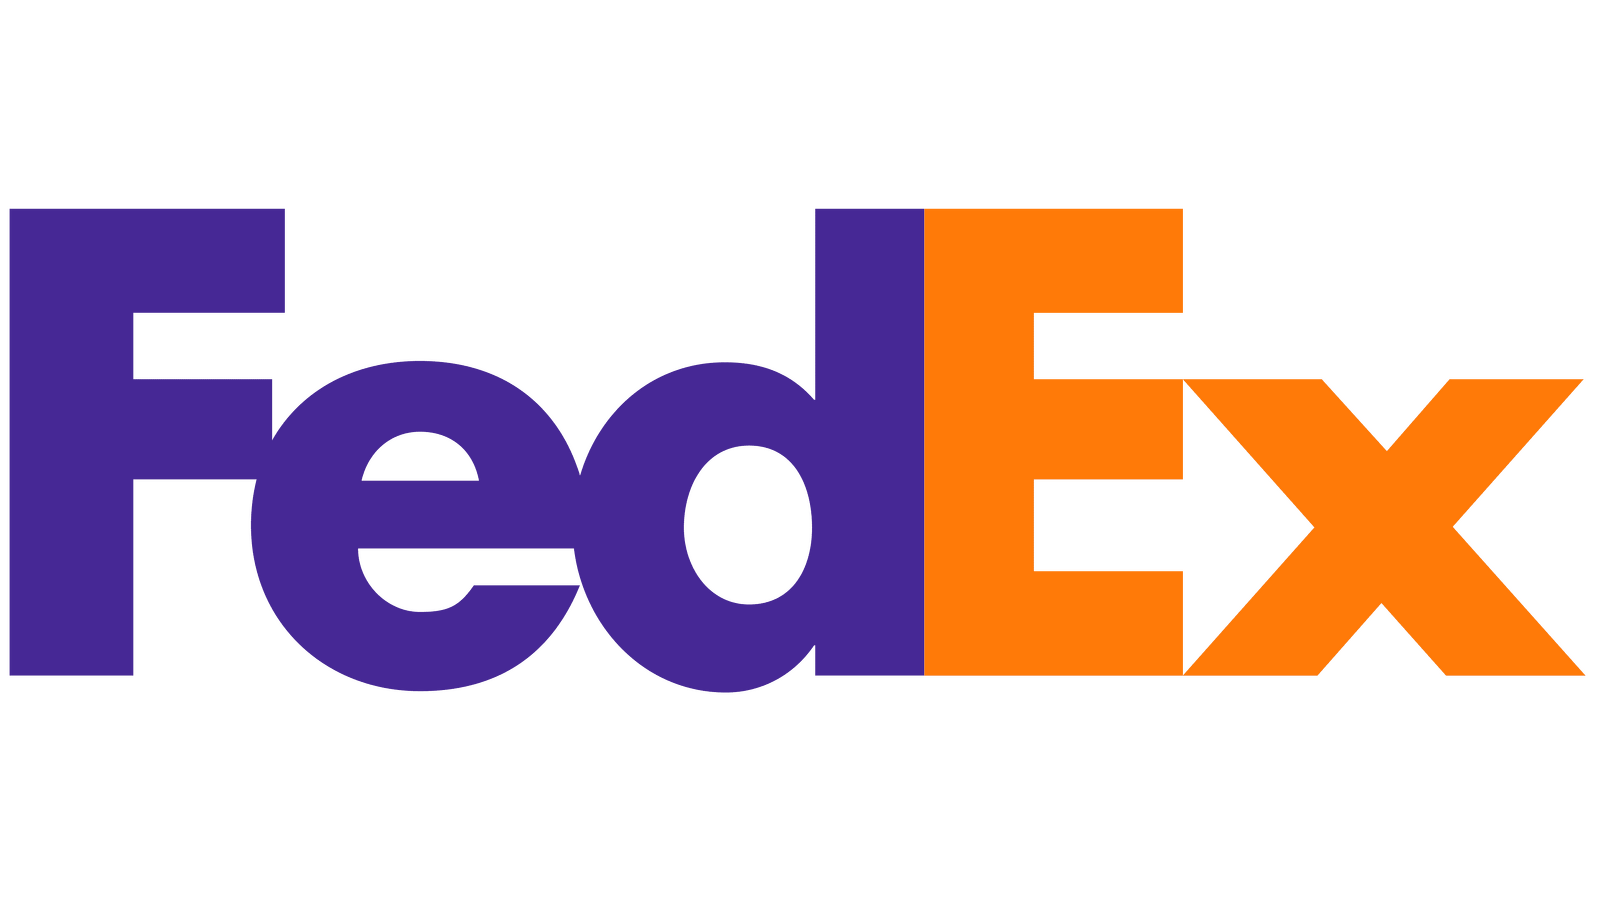  2022/01/Fedex-logo.png 